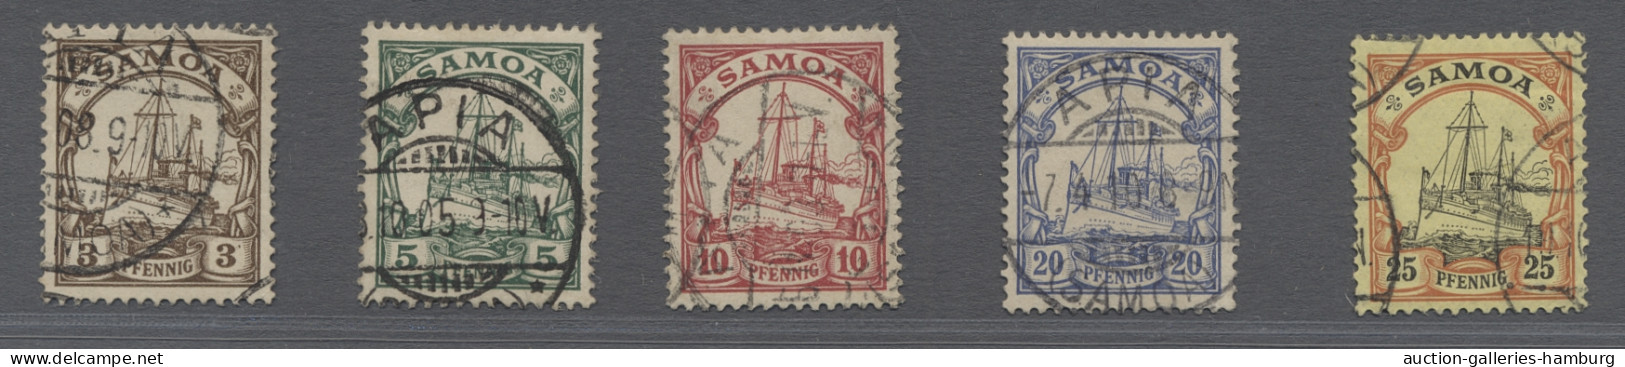 Deutsche Kolonien - Samoa: 1900ff., Kaiseryacht ohne Wz., der komplette Satz sau